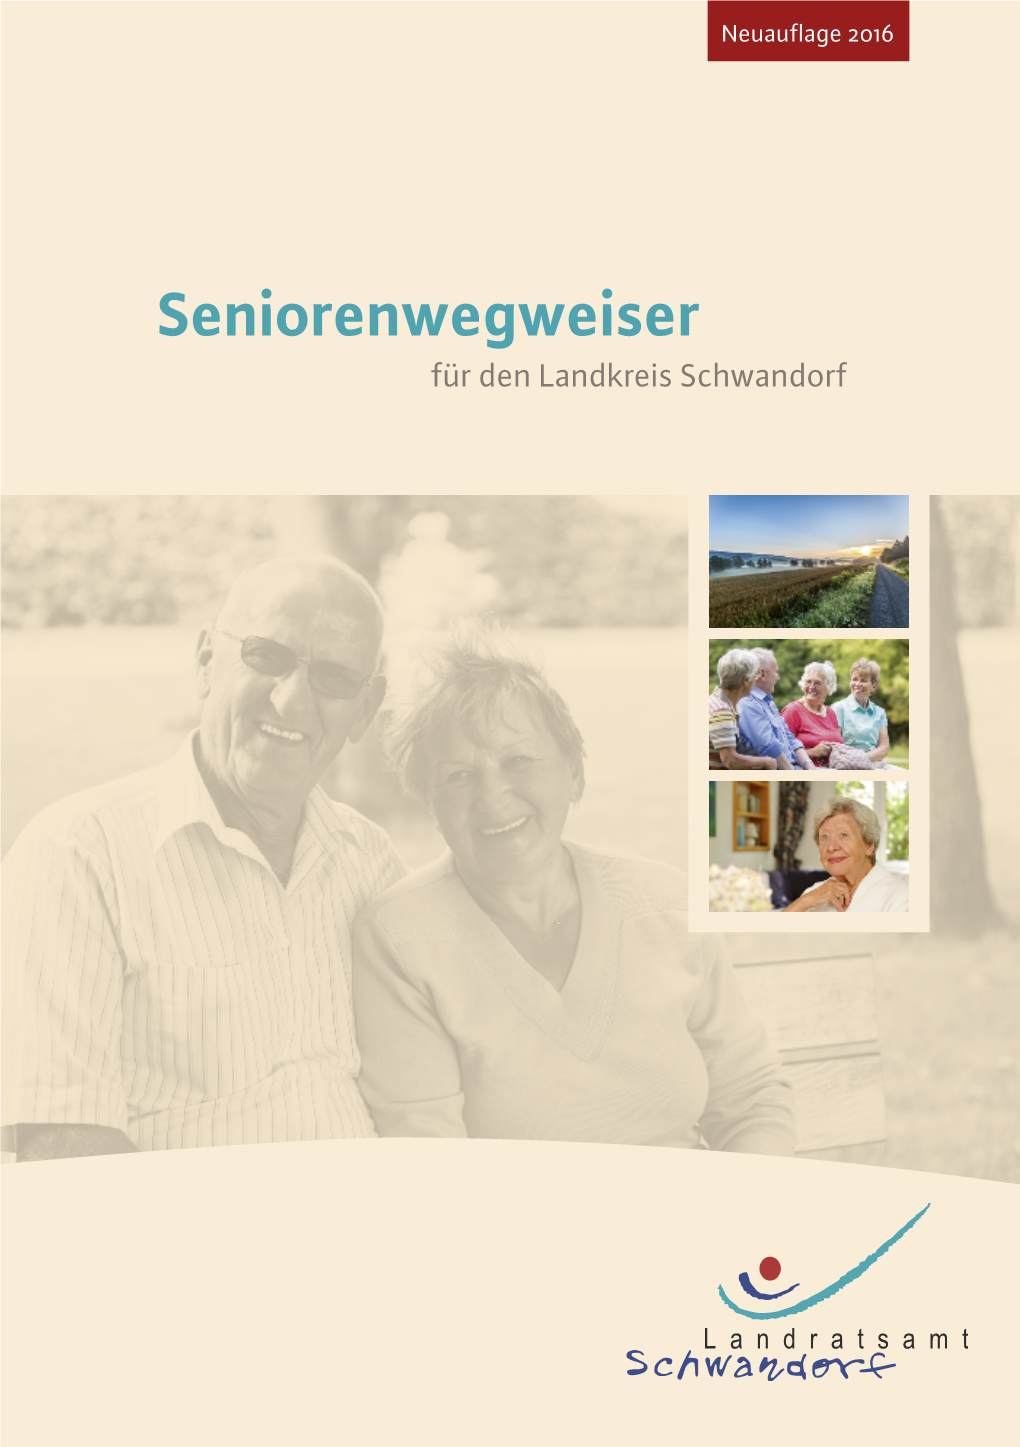 Seniorenwegweiser Des Landkreises Schwandorf, 2016